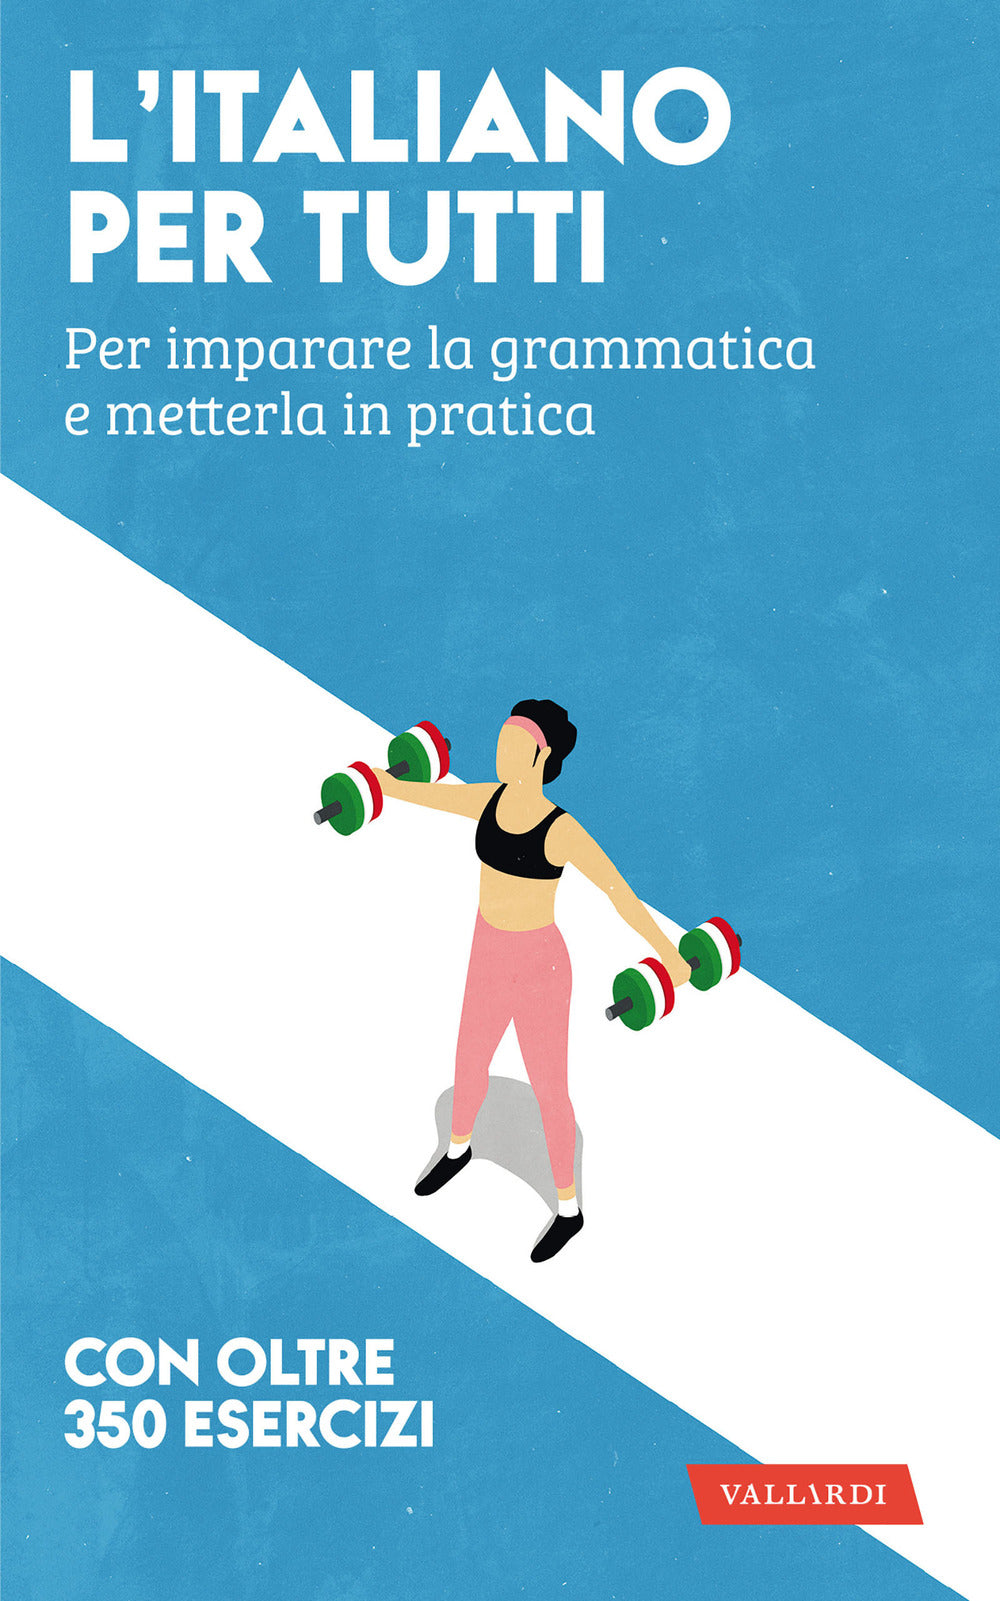 L'italiano per tutti. Per imparare la grammatica e metterla in pratica.